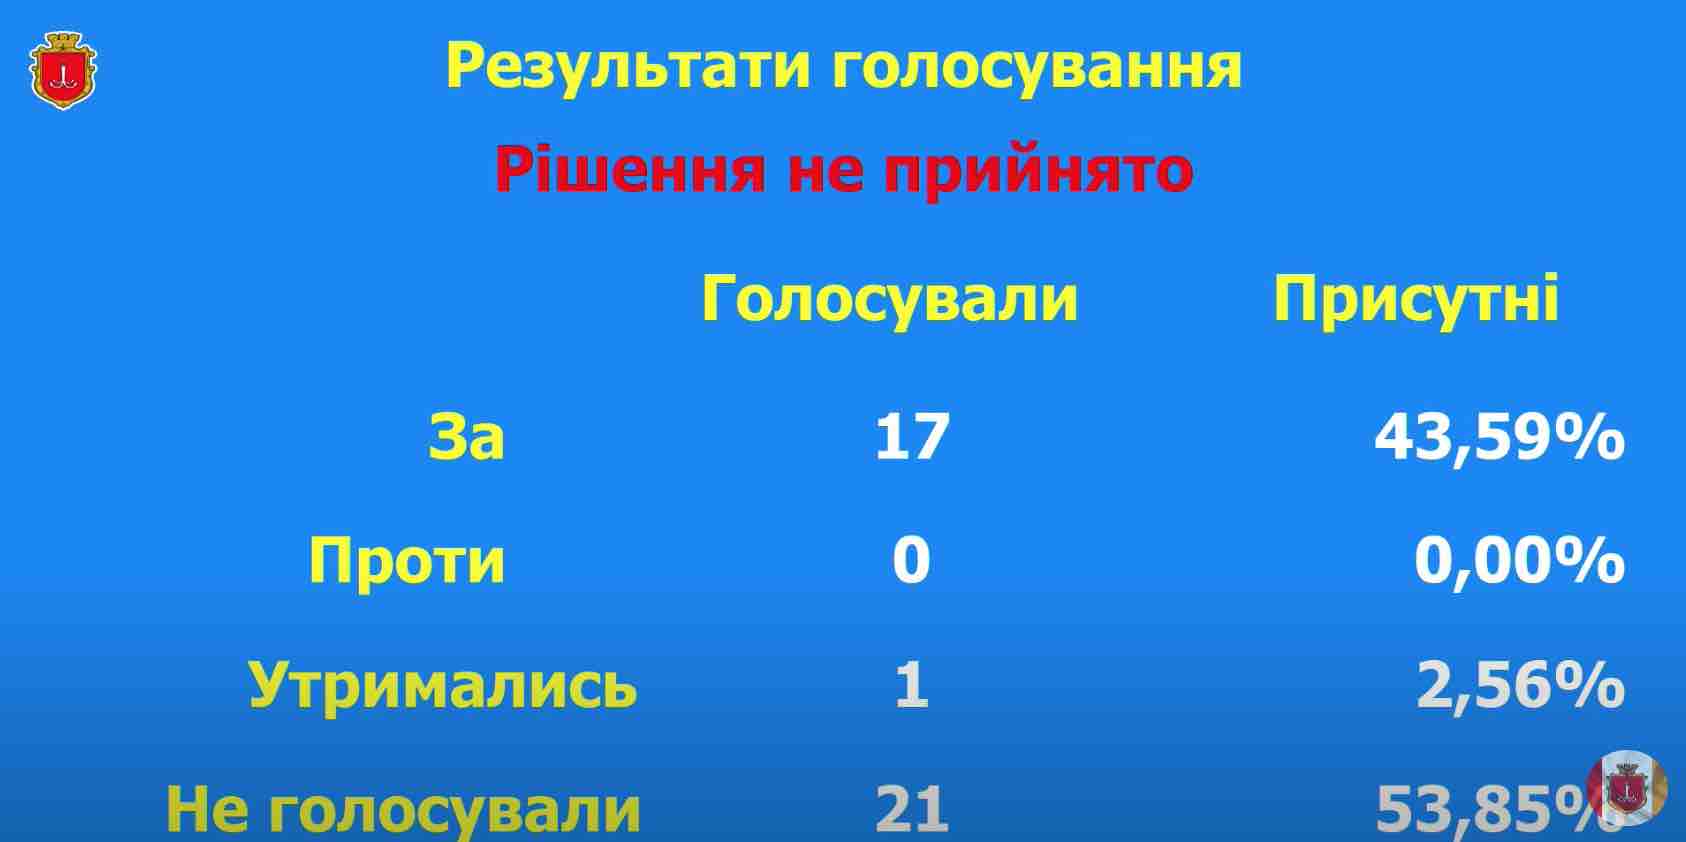 Одесские депутаты провалили голосование за демонтаж памятника Екатерине II